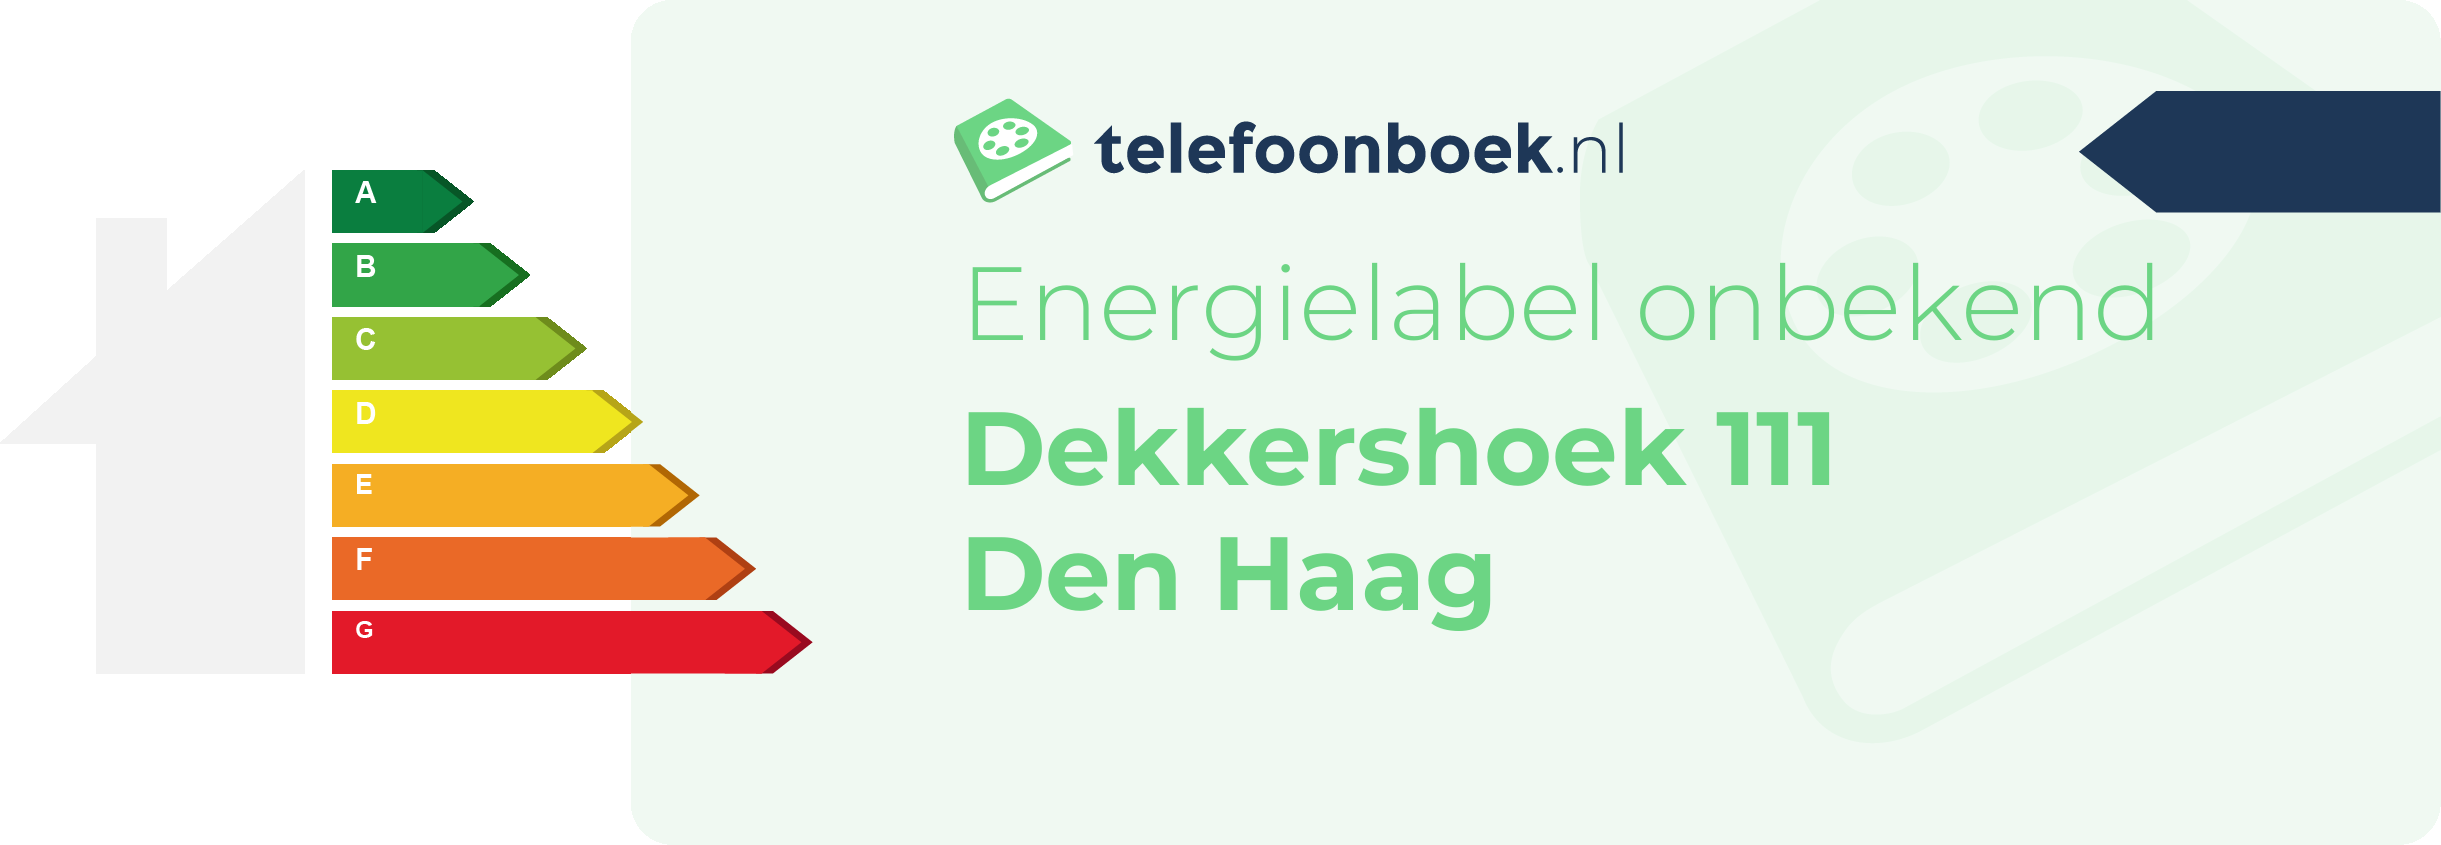 Energielabel Dekkershoek 111 Den Haag